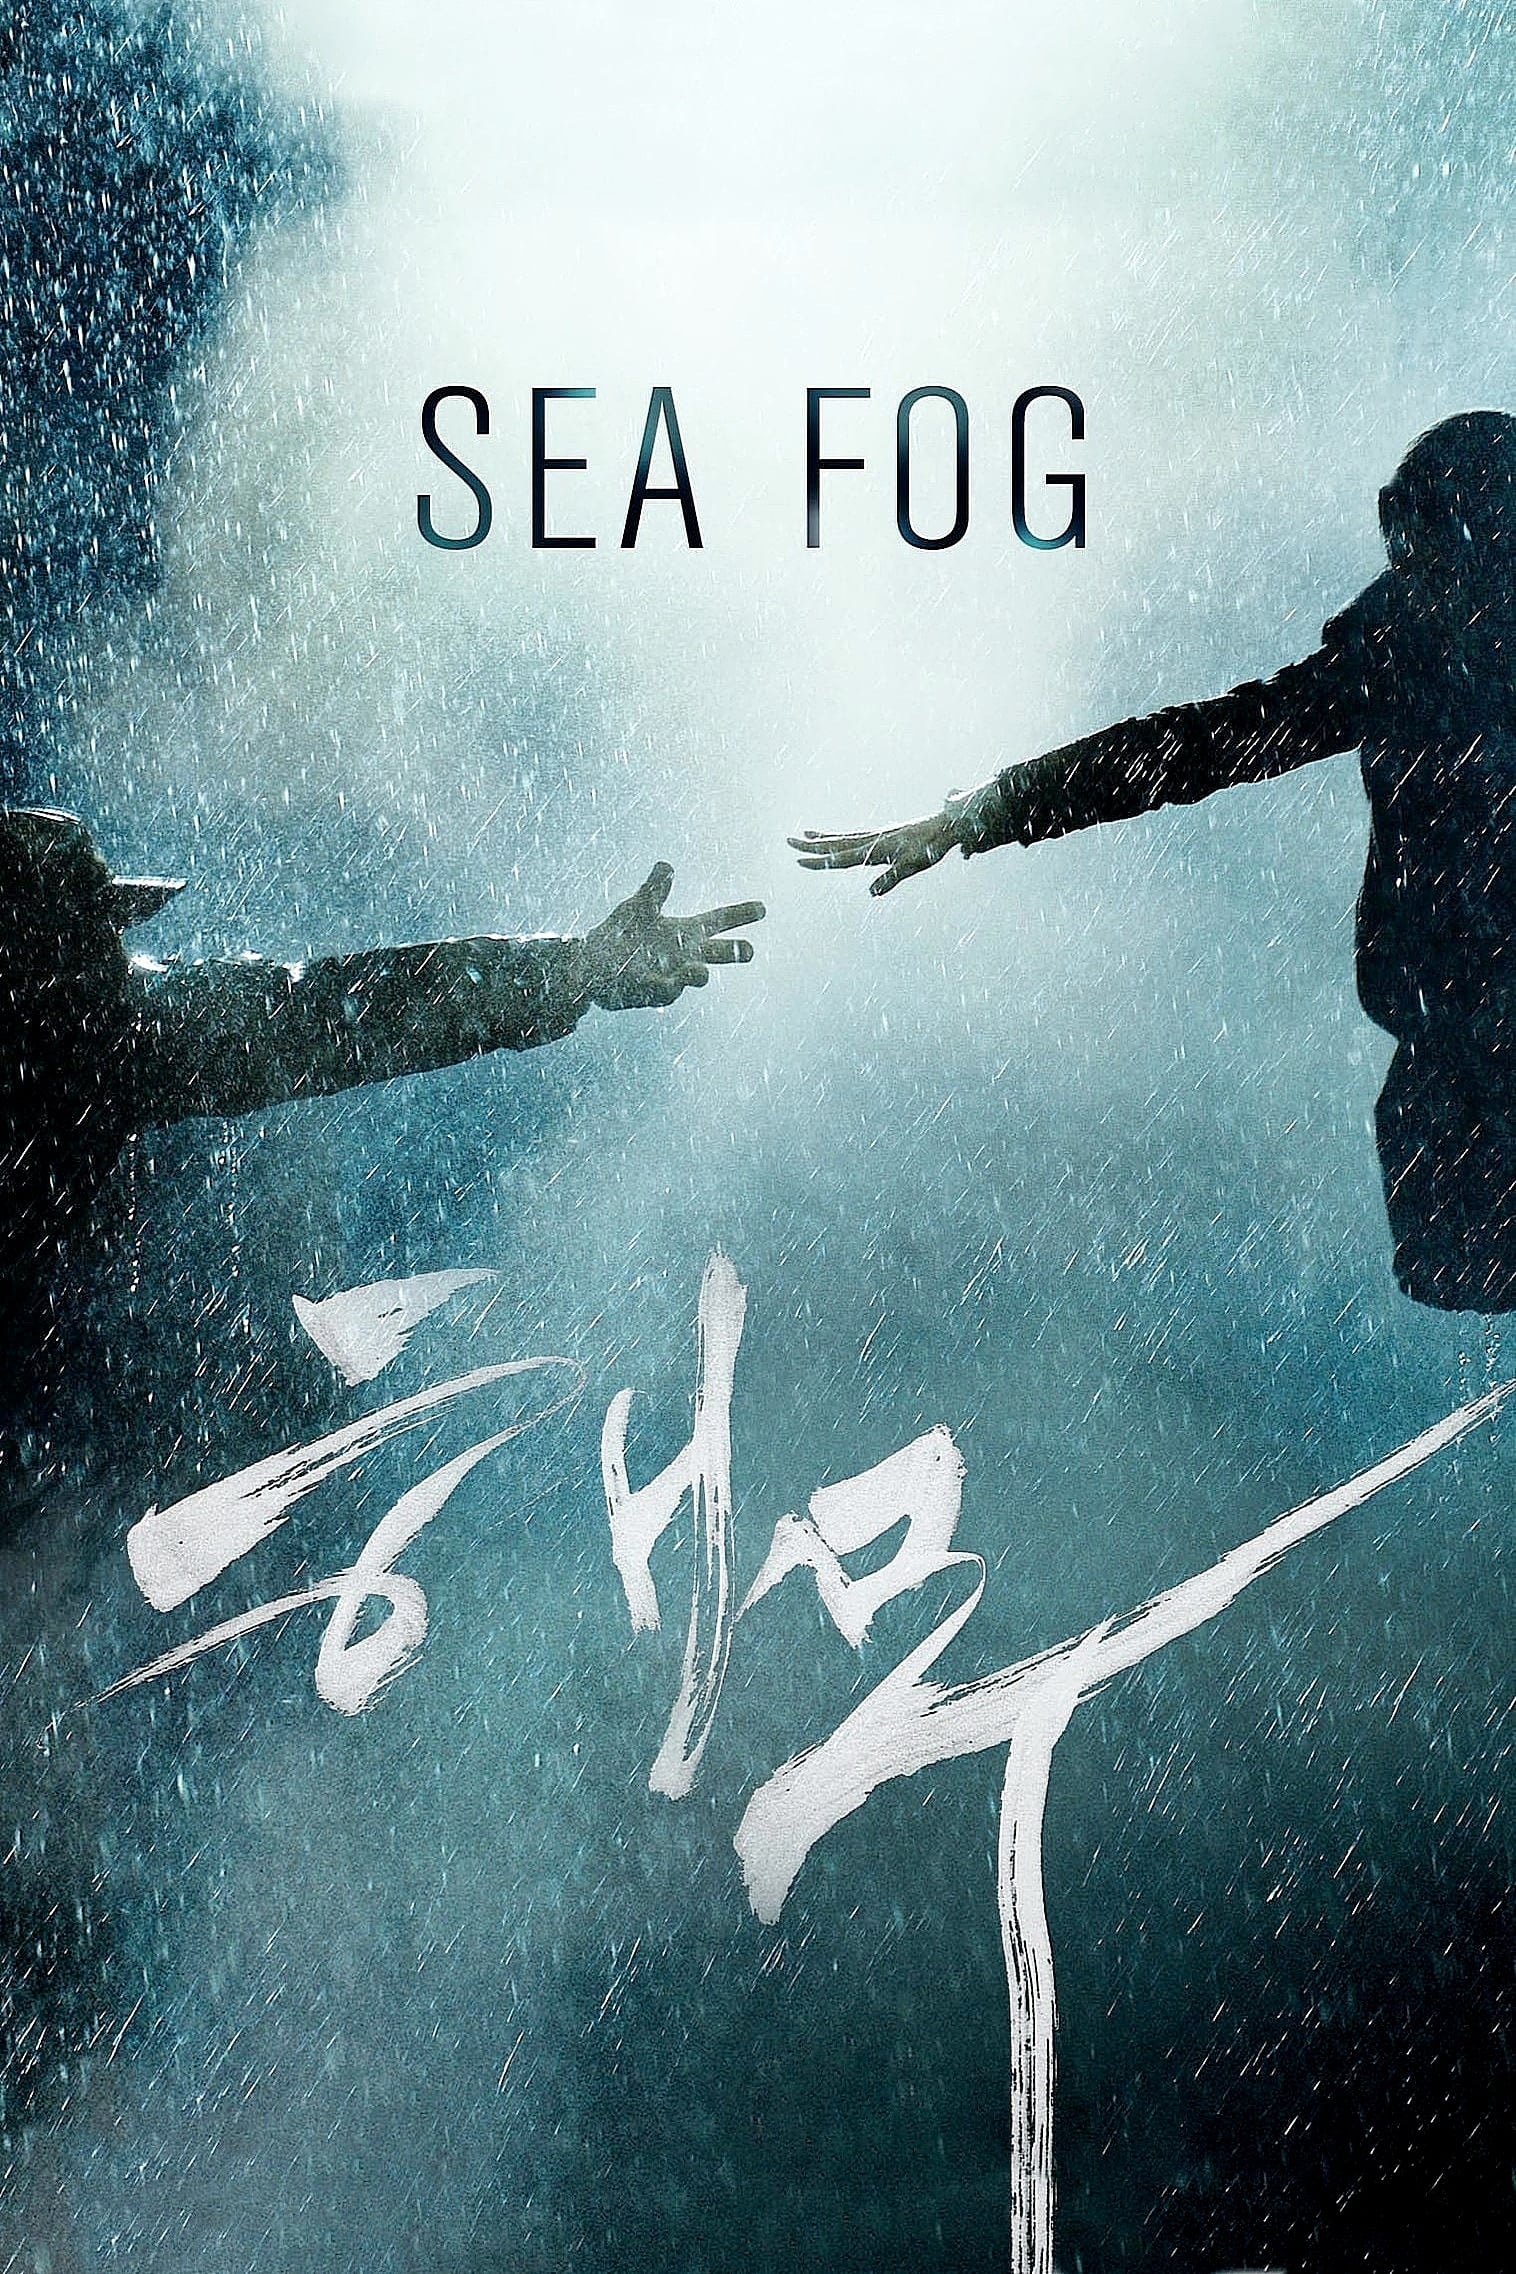 Sea Fog – Freiheit hat ihren Preis (2014)